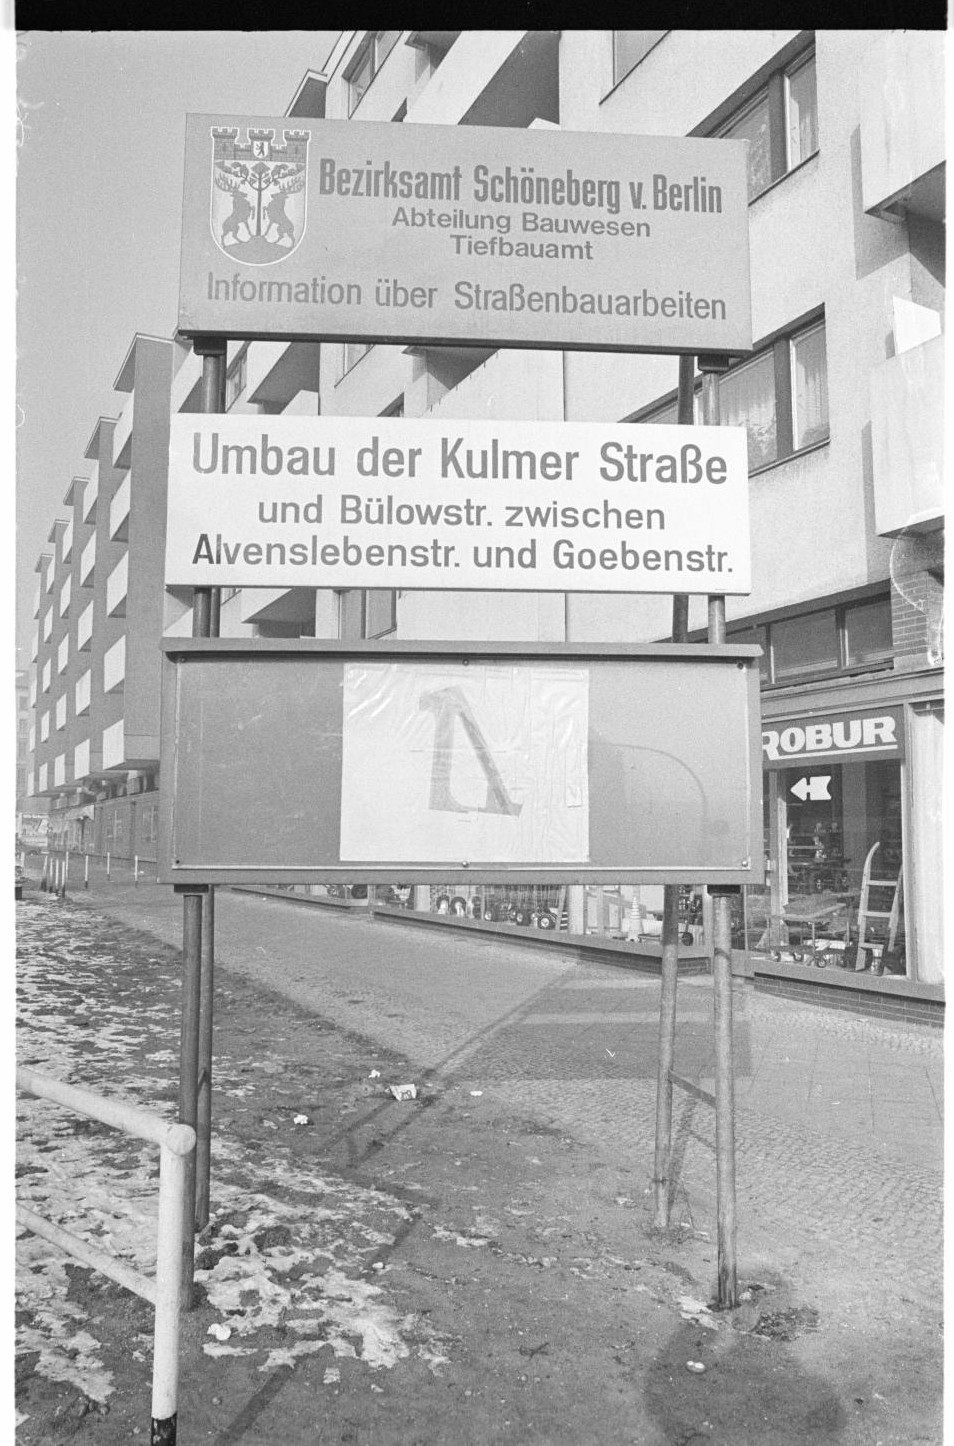 Kleinbildnegativ: Schild, Straßenbauarbeiten, Kulmer Straße und Bülowstraße, 1978 (Museen Tempelhof-Schöneberg/Jürgen Henschel RR-F)